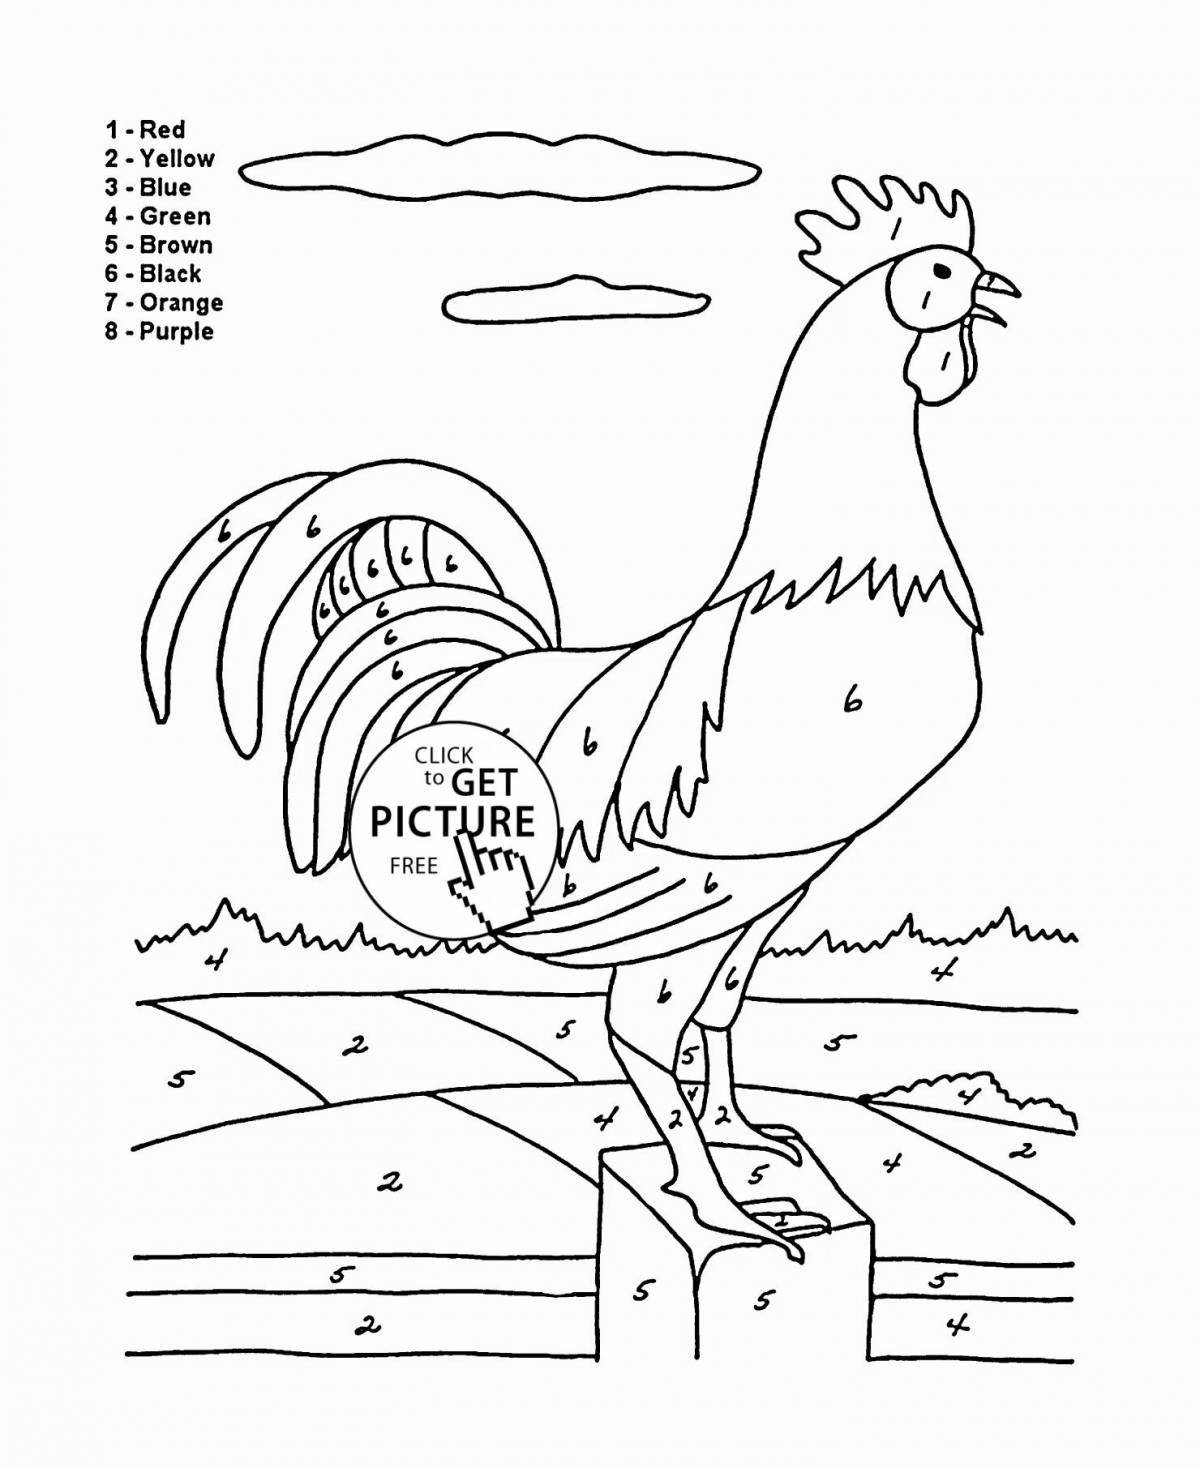 Привлекательная страница раскраски домашней птицы для детей 5-7 лет